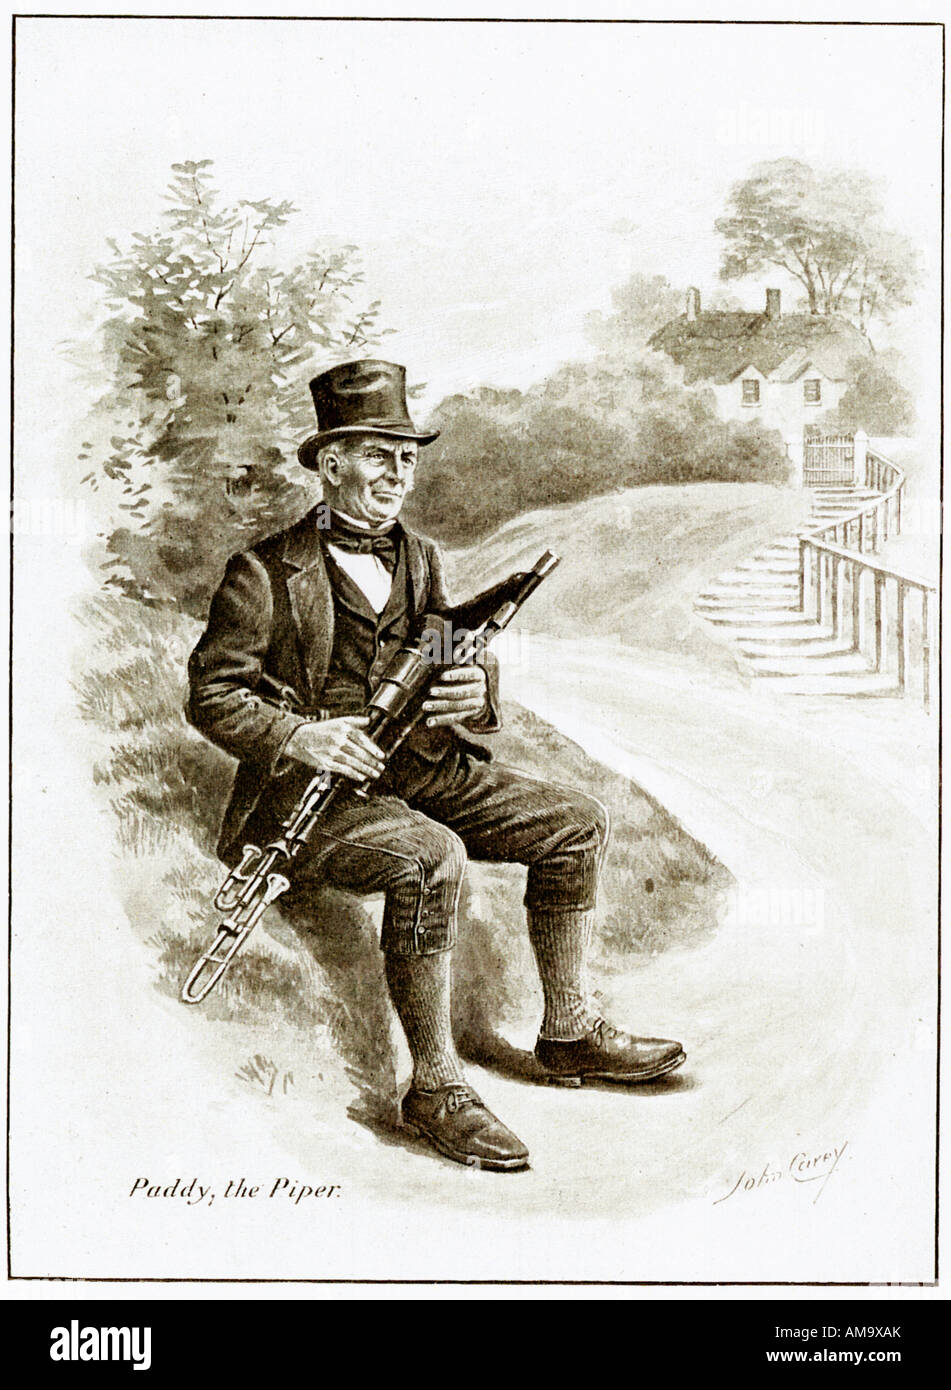 El piper Paddy Edwardian ilustración de un músico irlandés descansando al lado de la carretera Foto de stock